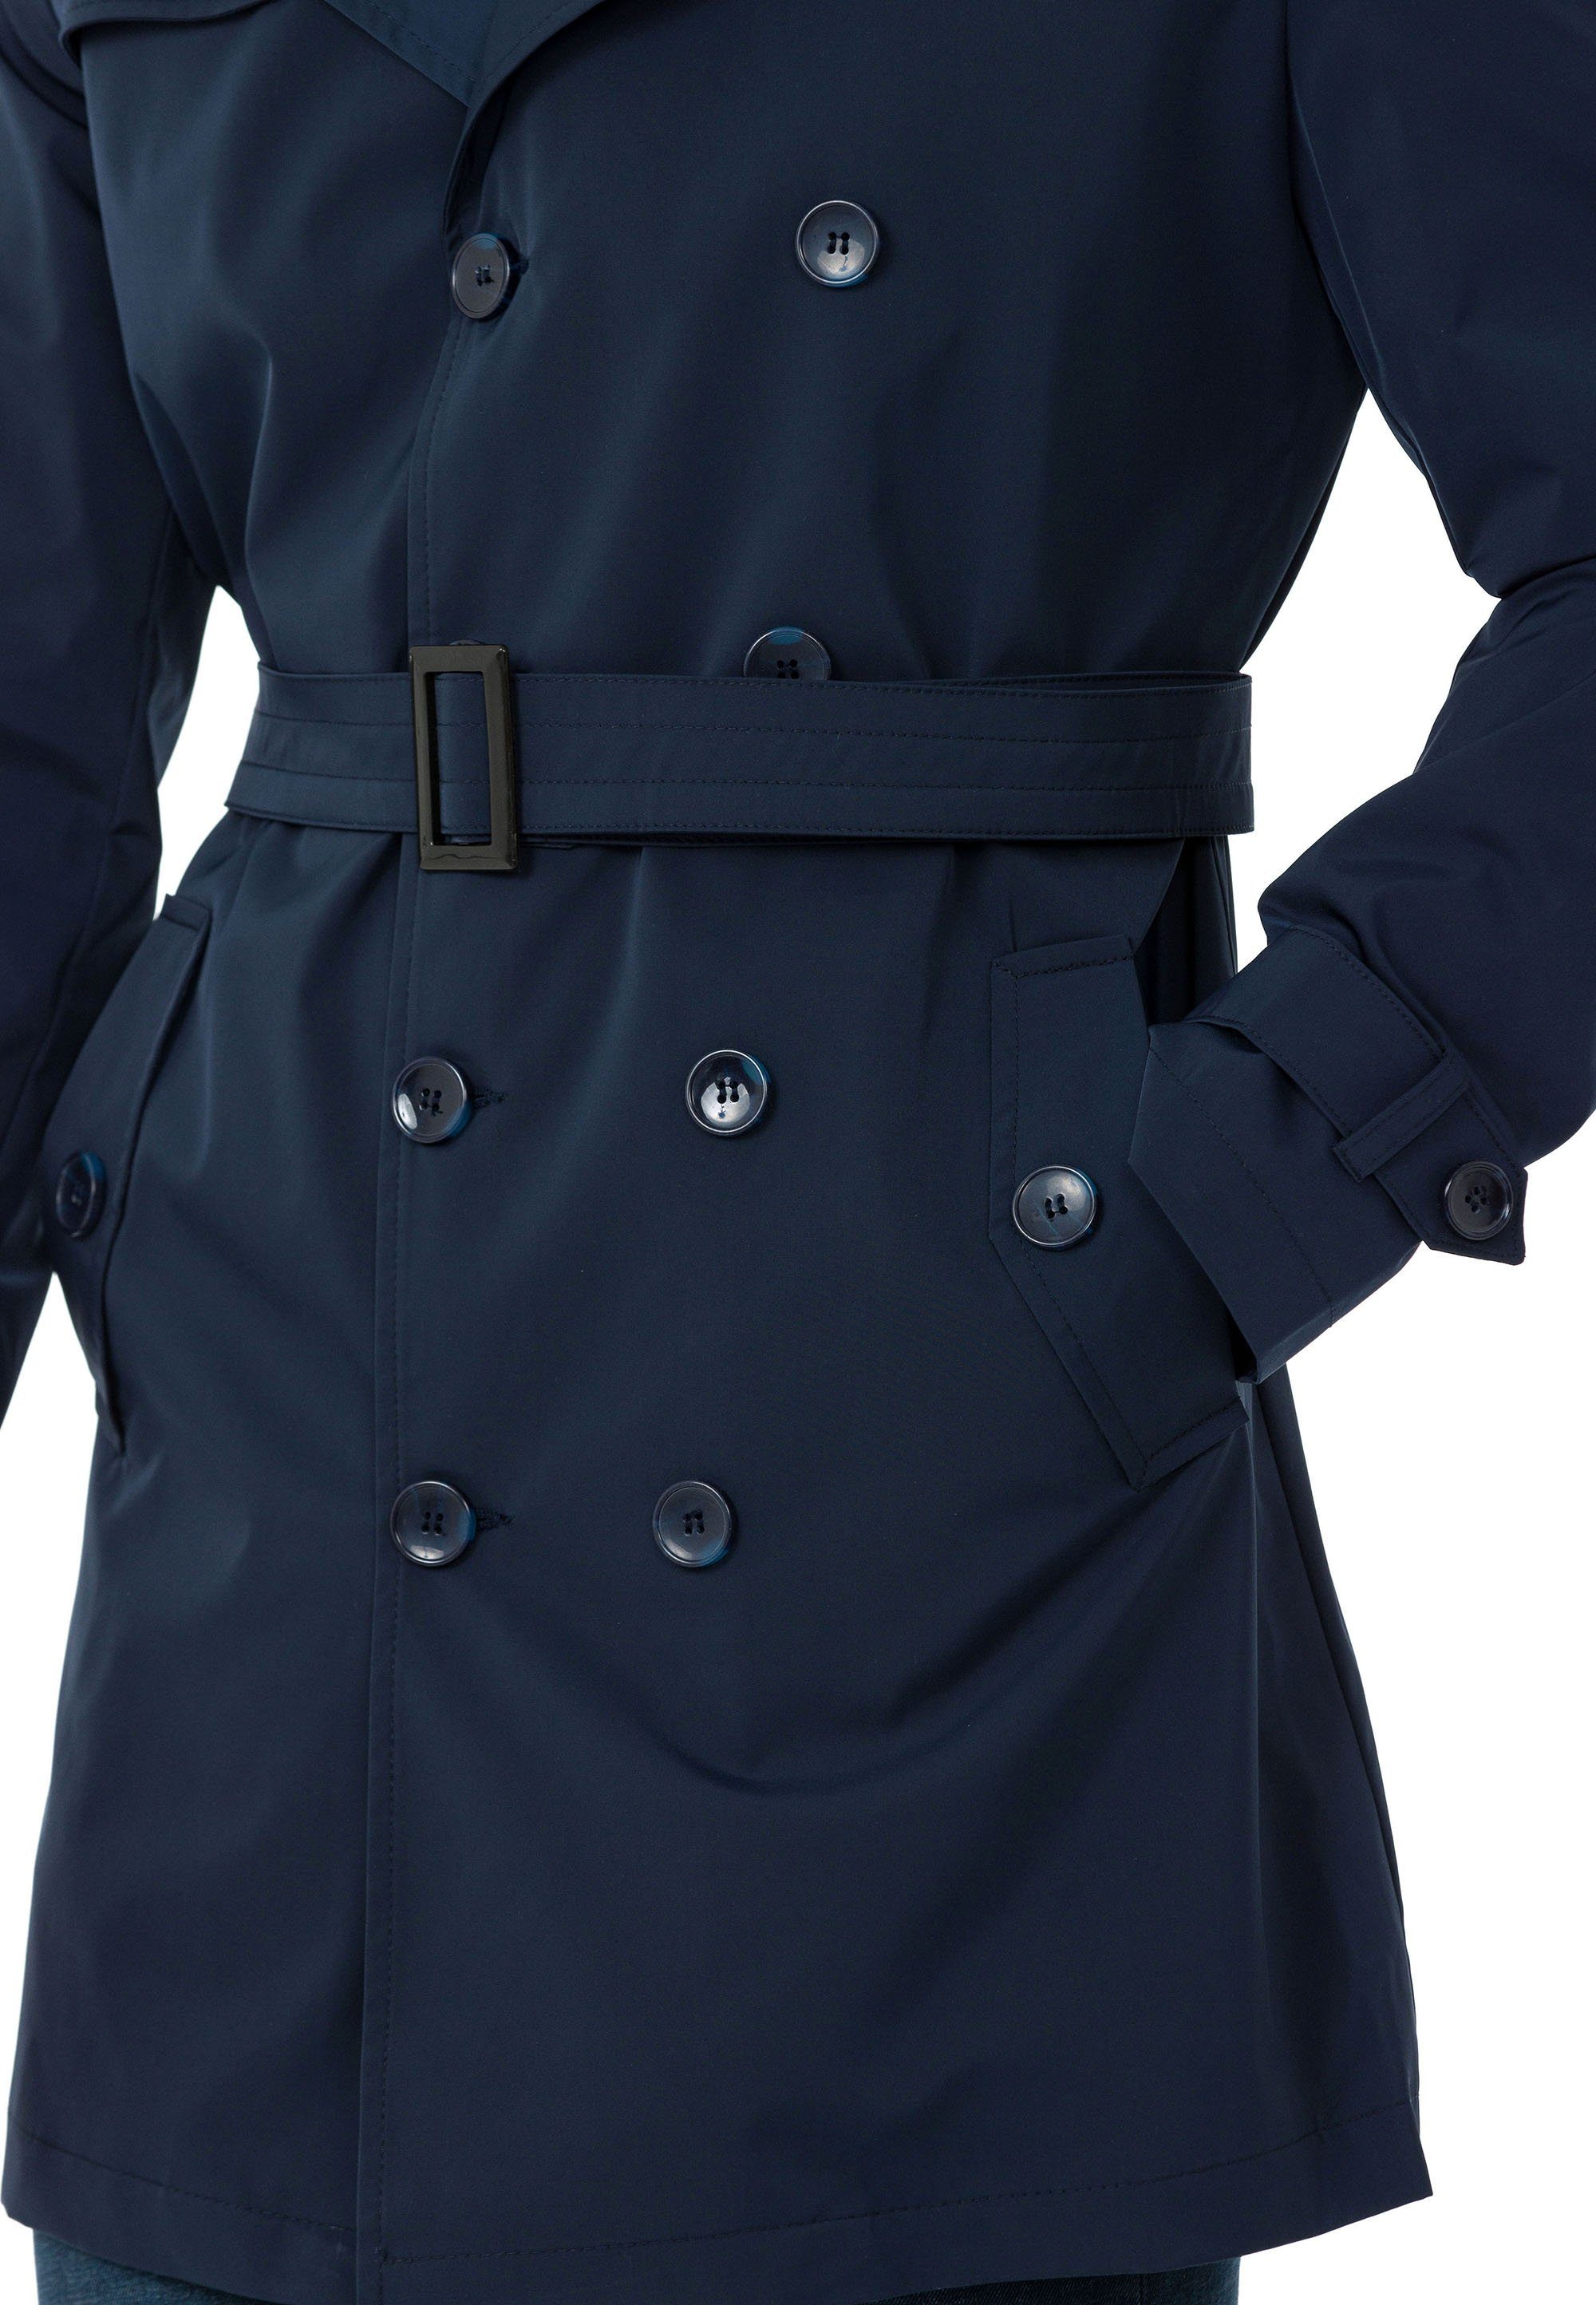 mit Blau Gürtelschnalle Navy Premium RedBridge Mantel Qualität Trenchcoat